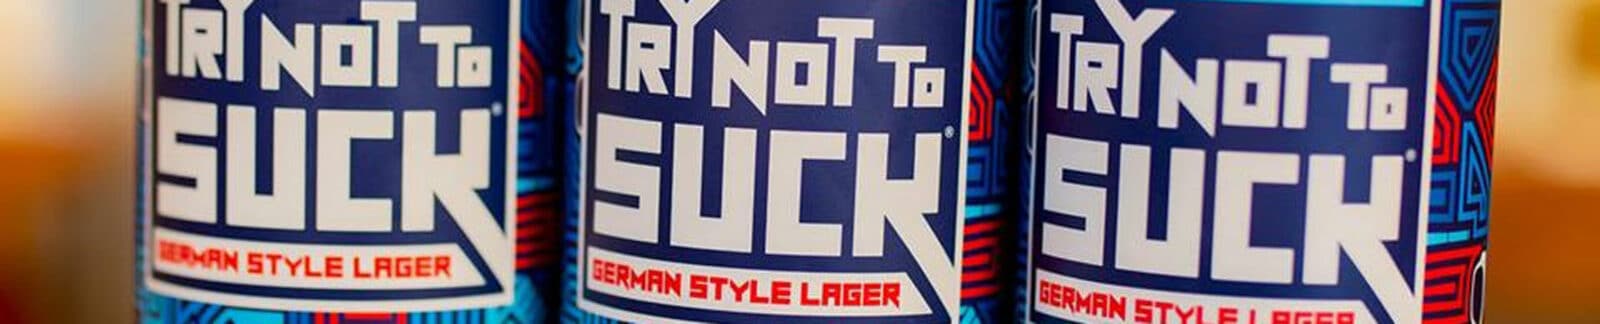 Joe Maddon's Try Not to Suck Beer header